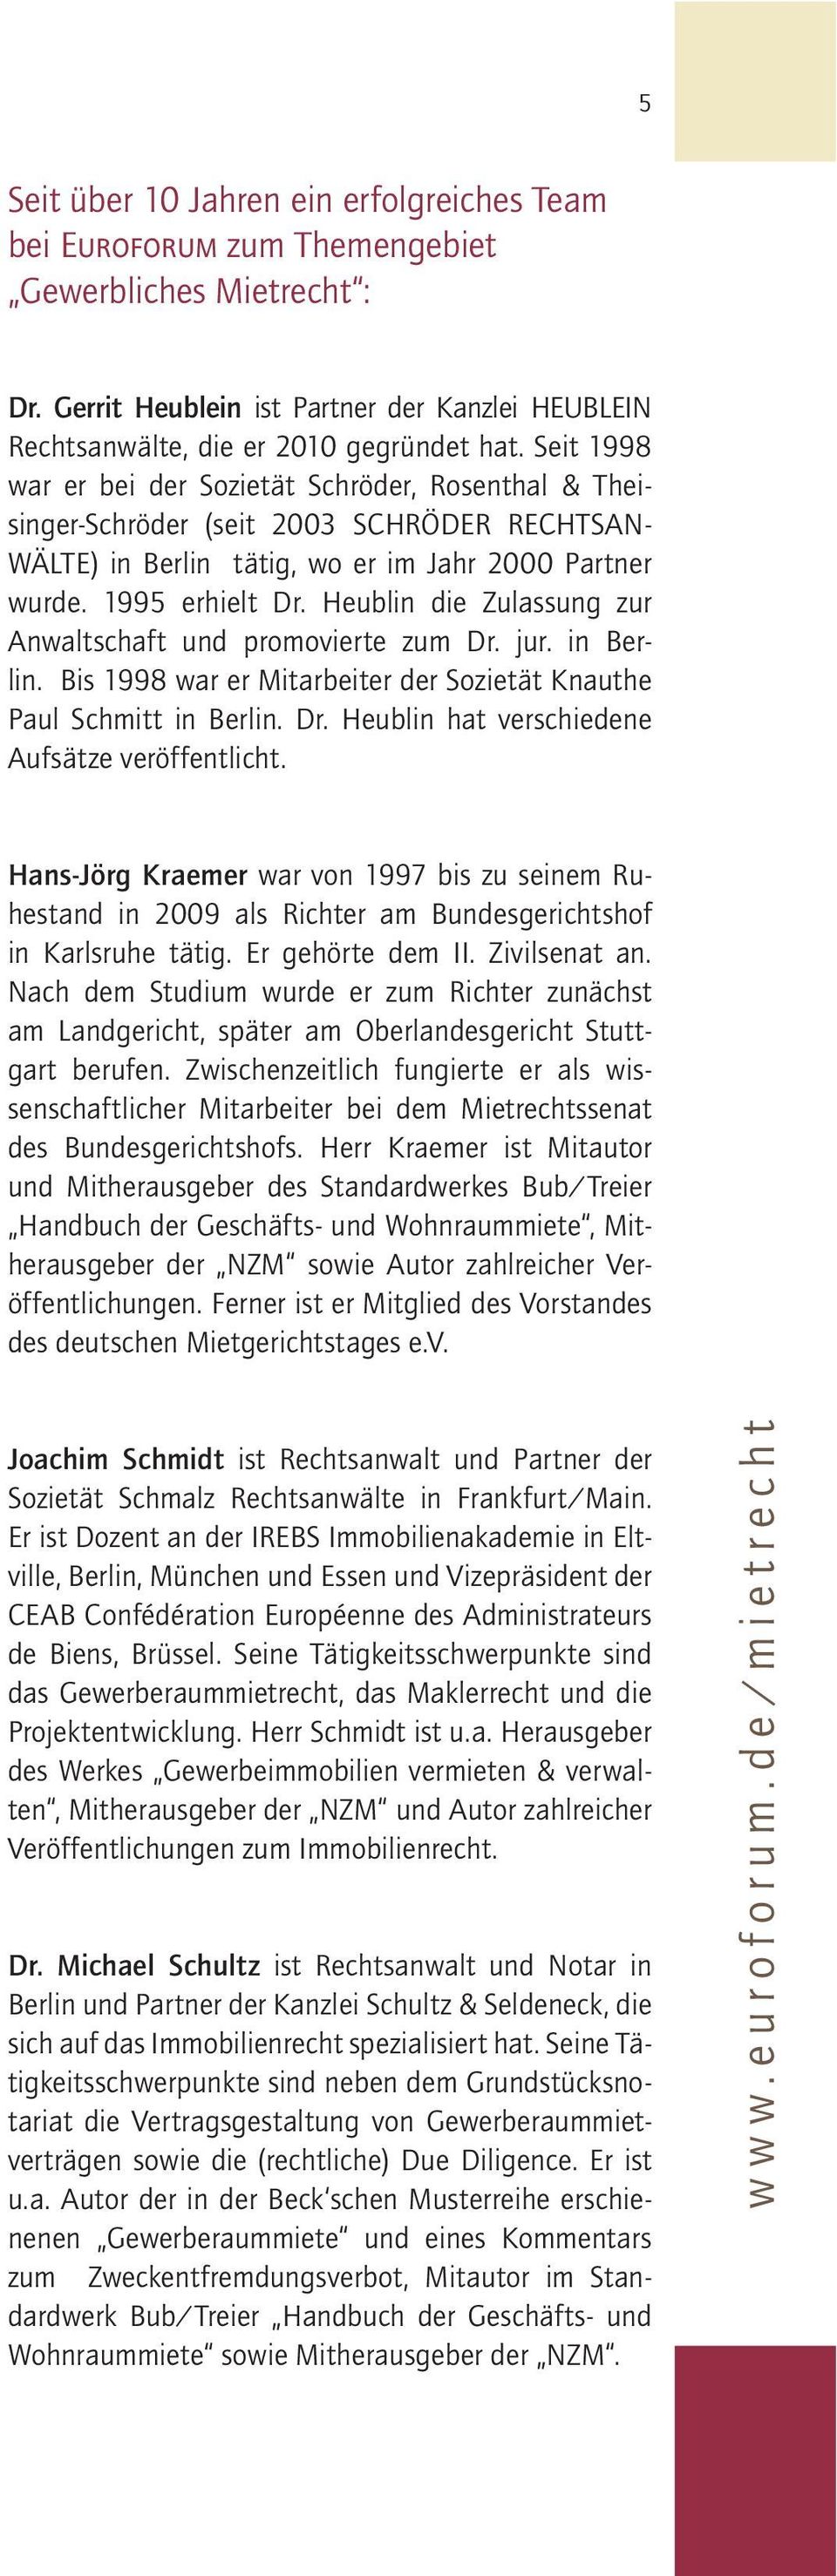 Heublin die Zulassung zur Anwaltschaft und promovierte zum Dr. jur. in Berlin. Bis 1998 war er Mitarbeiter der Sozietät Knauthe Paul Schmitt in Berlin. Dr. Heublin hat verschiedene Aufsätze veröffentlicht.